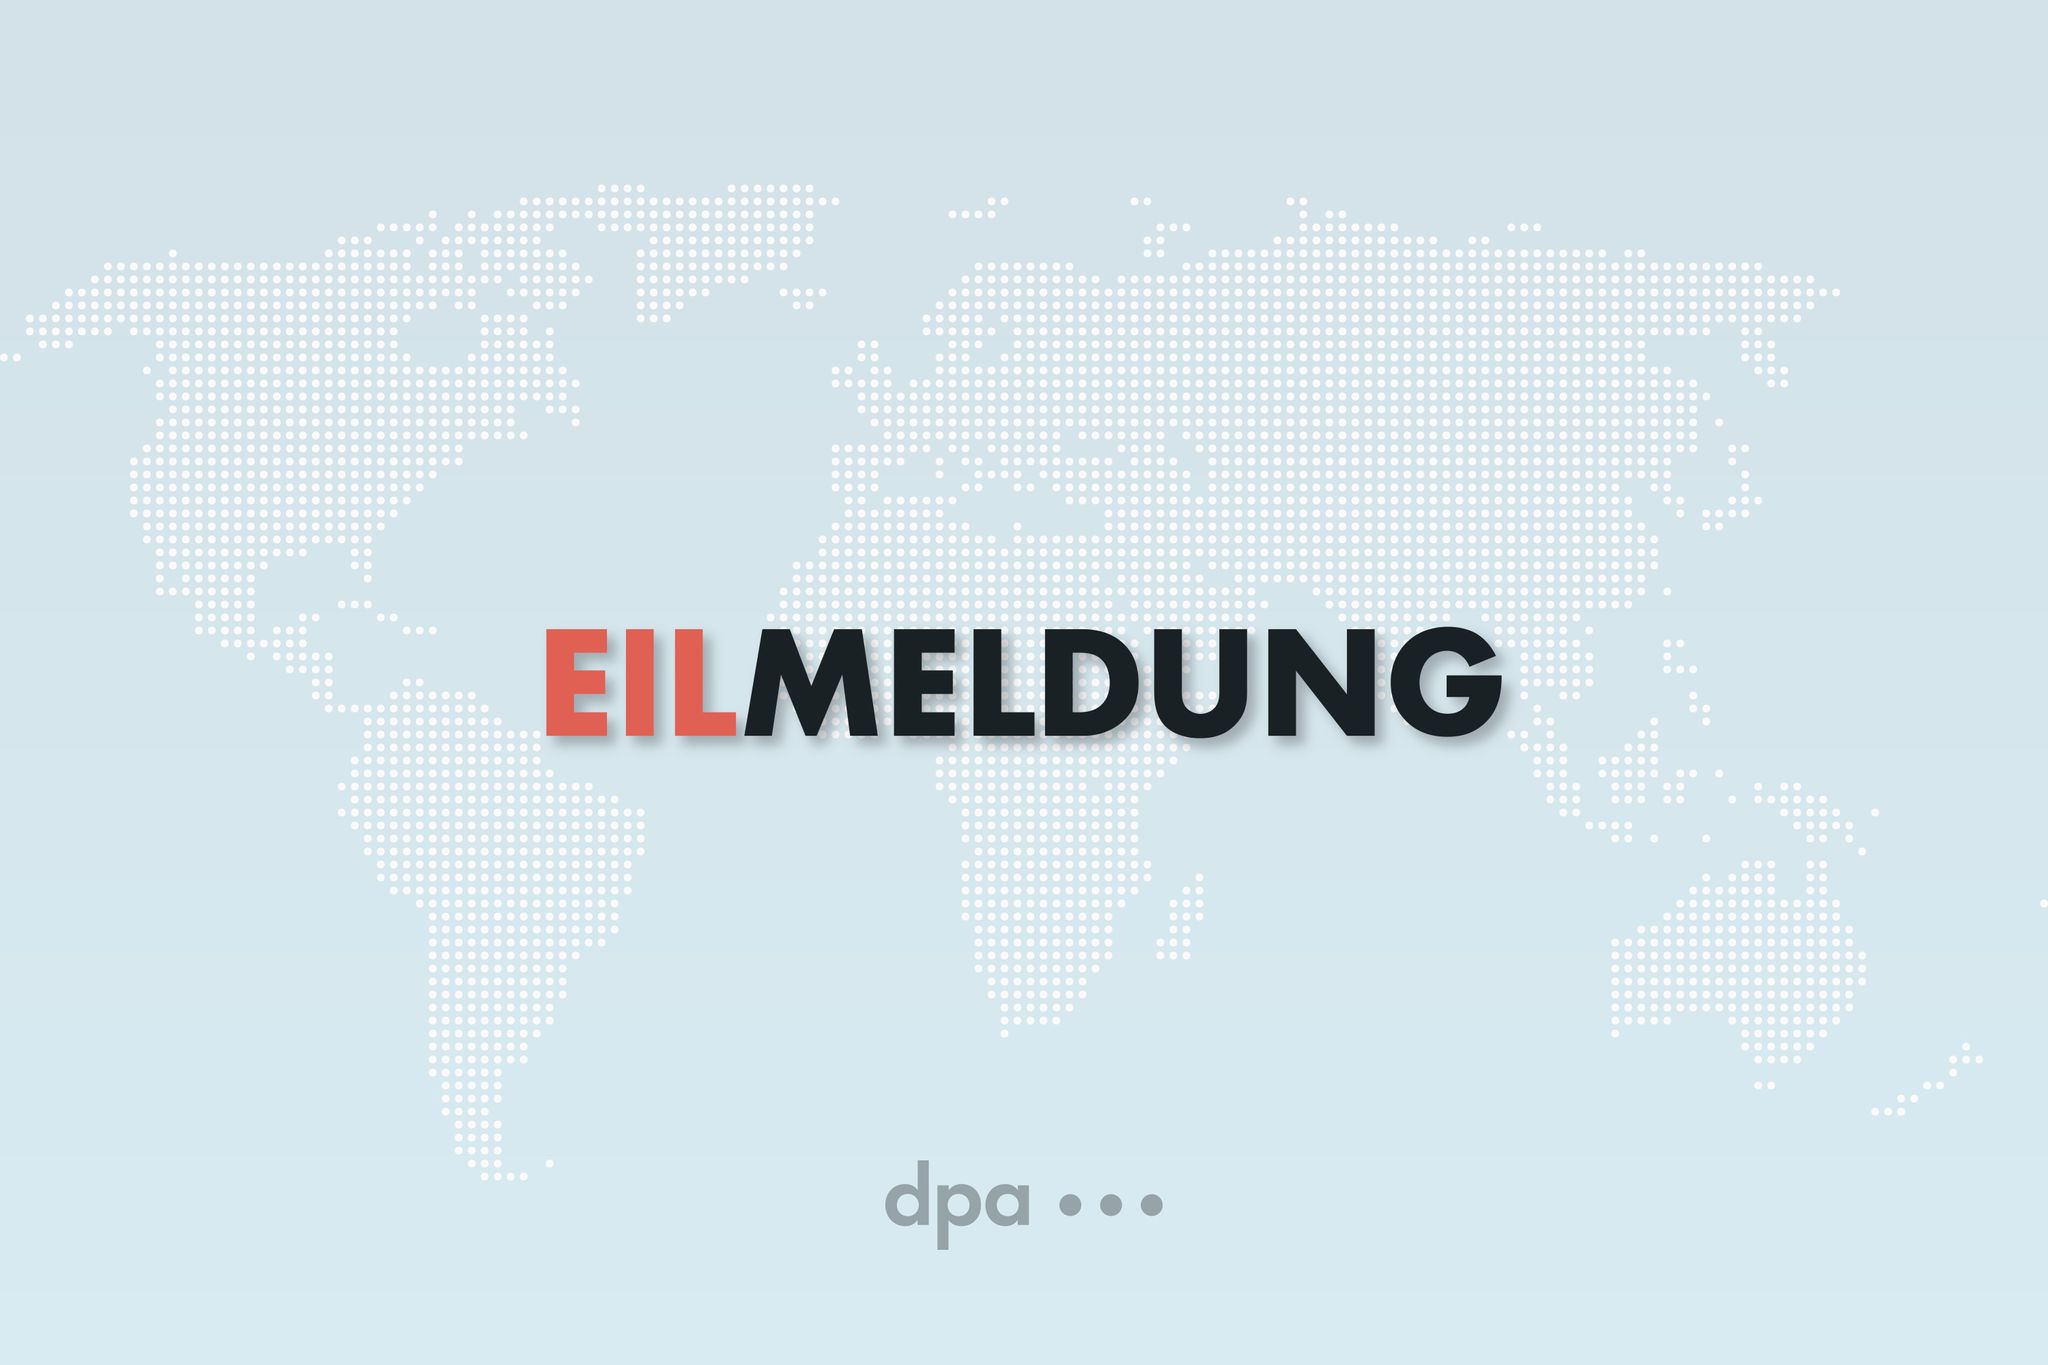 Bundestag beschließt Reform des Klimaschutzgesetzes